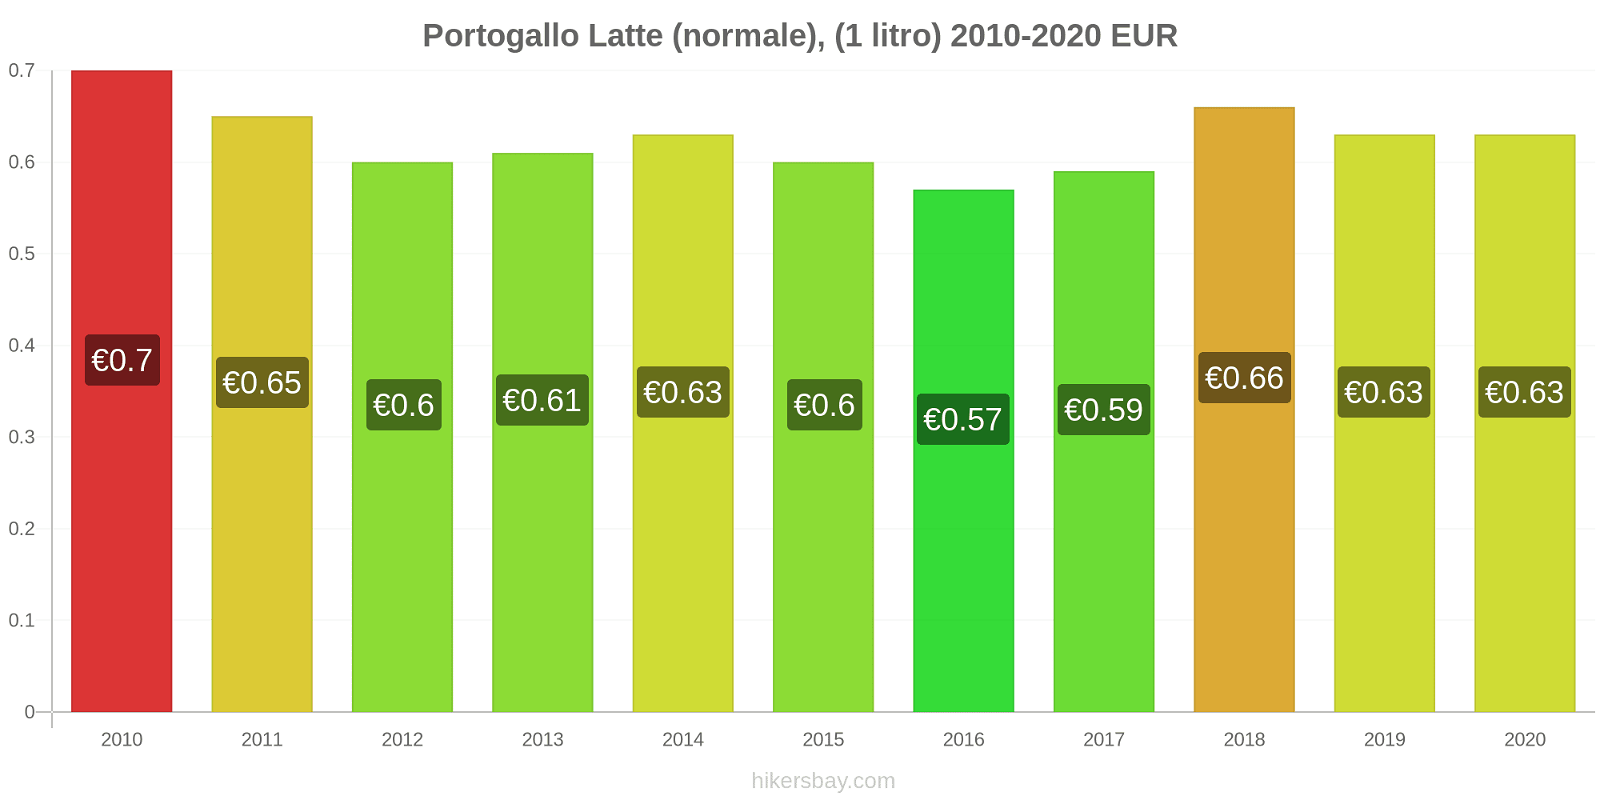 Portogallo variazioni di prezzo Latte (1 litro) hikersbay.com